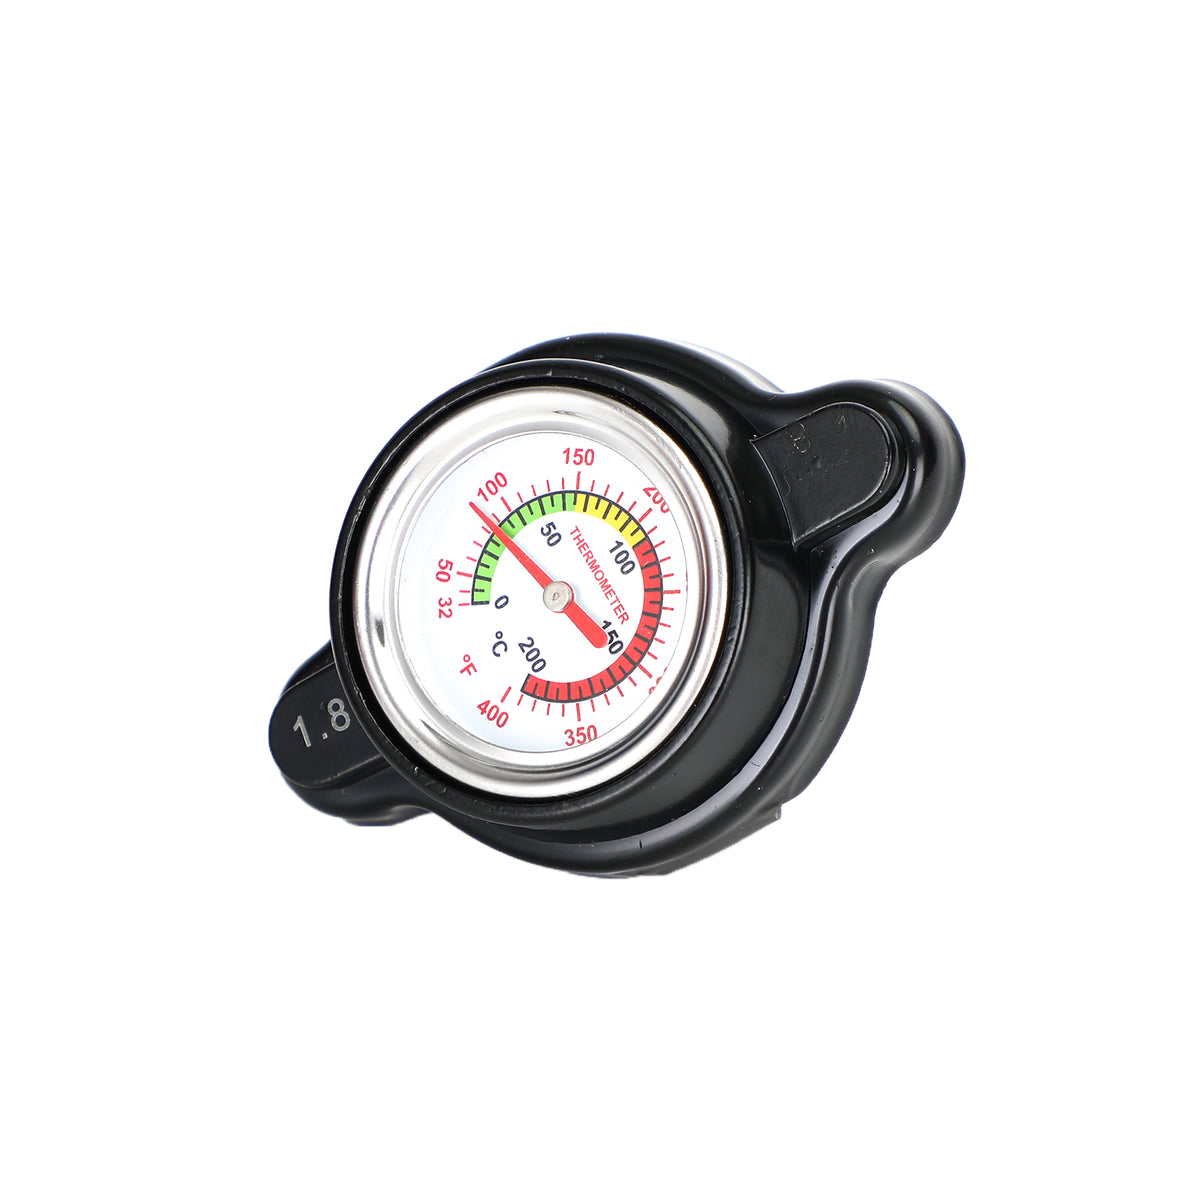 02-15 Tappo radiatore ad alta pressione Honda Crf450R con indicatore di temperatura 1,8 bar